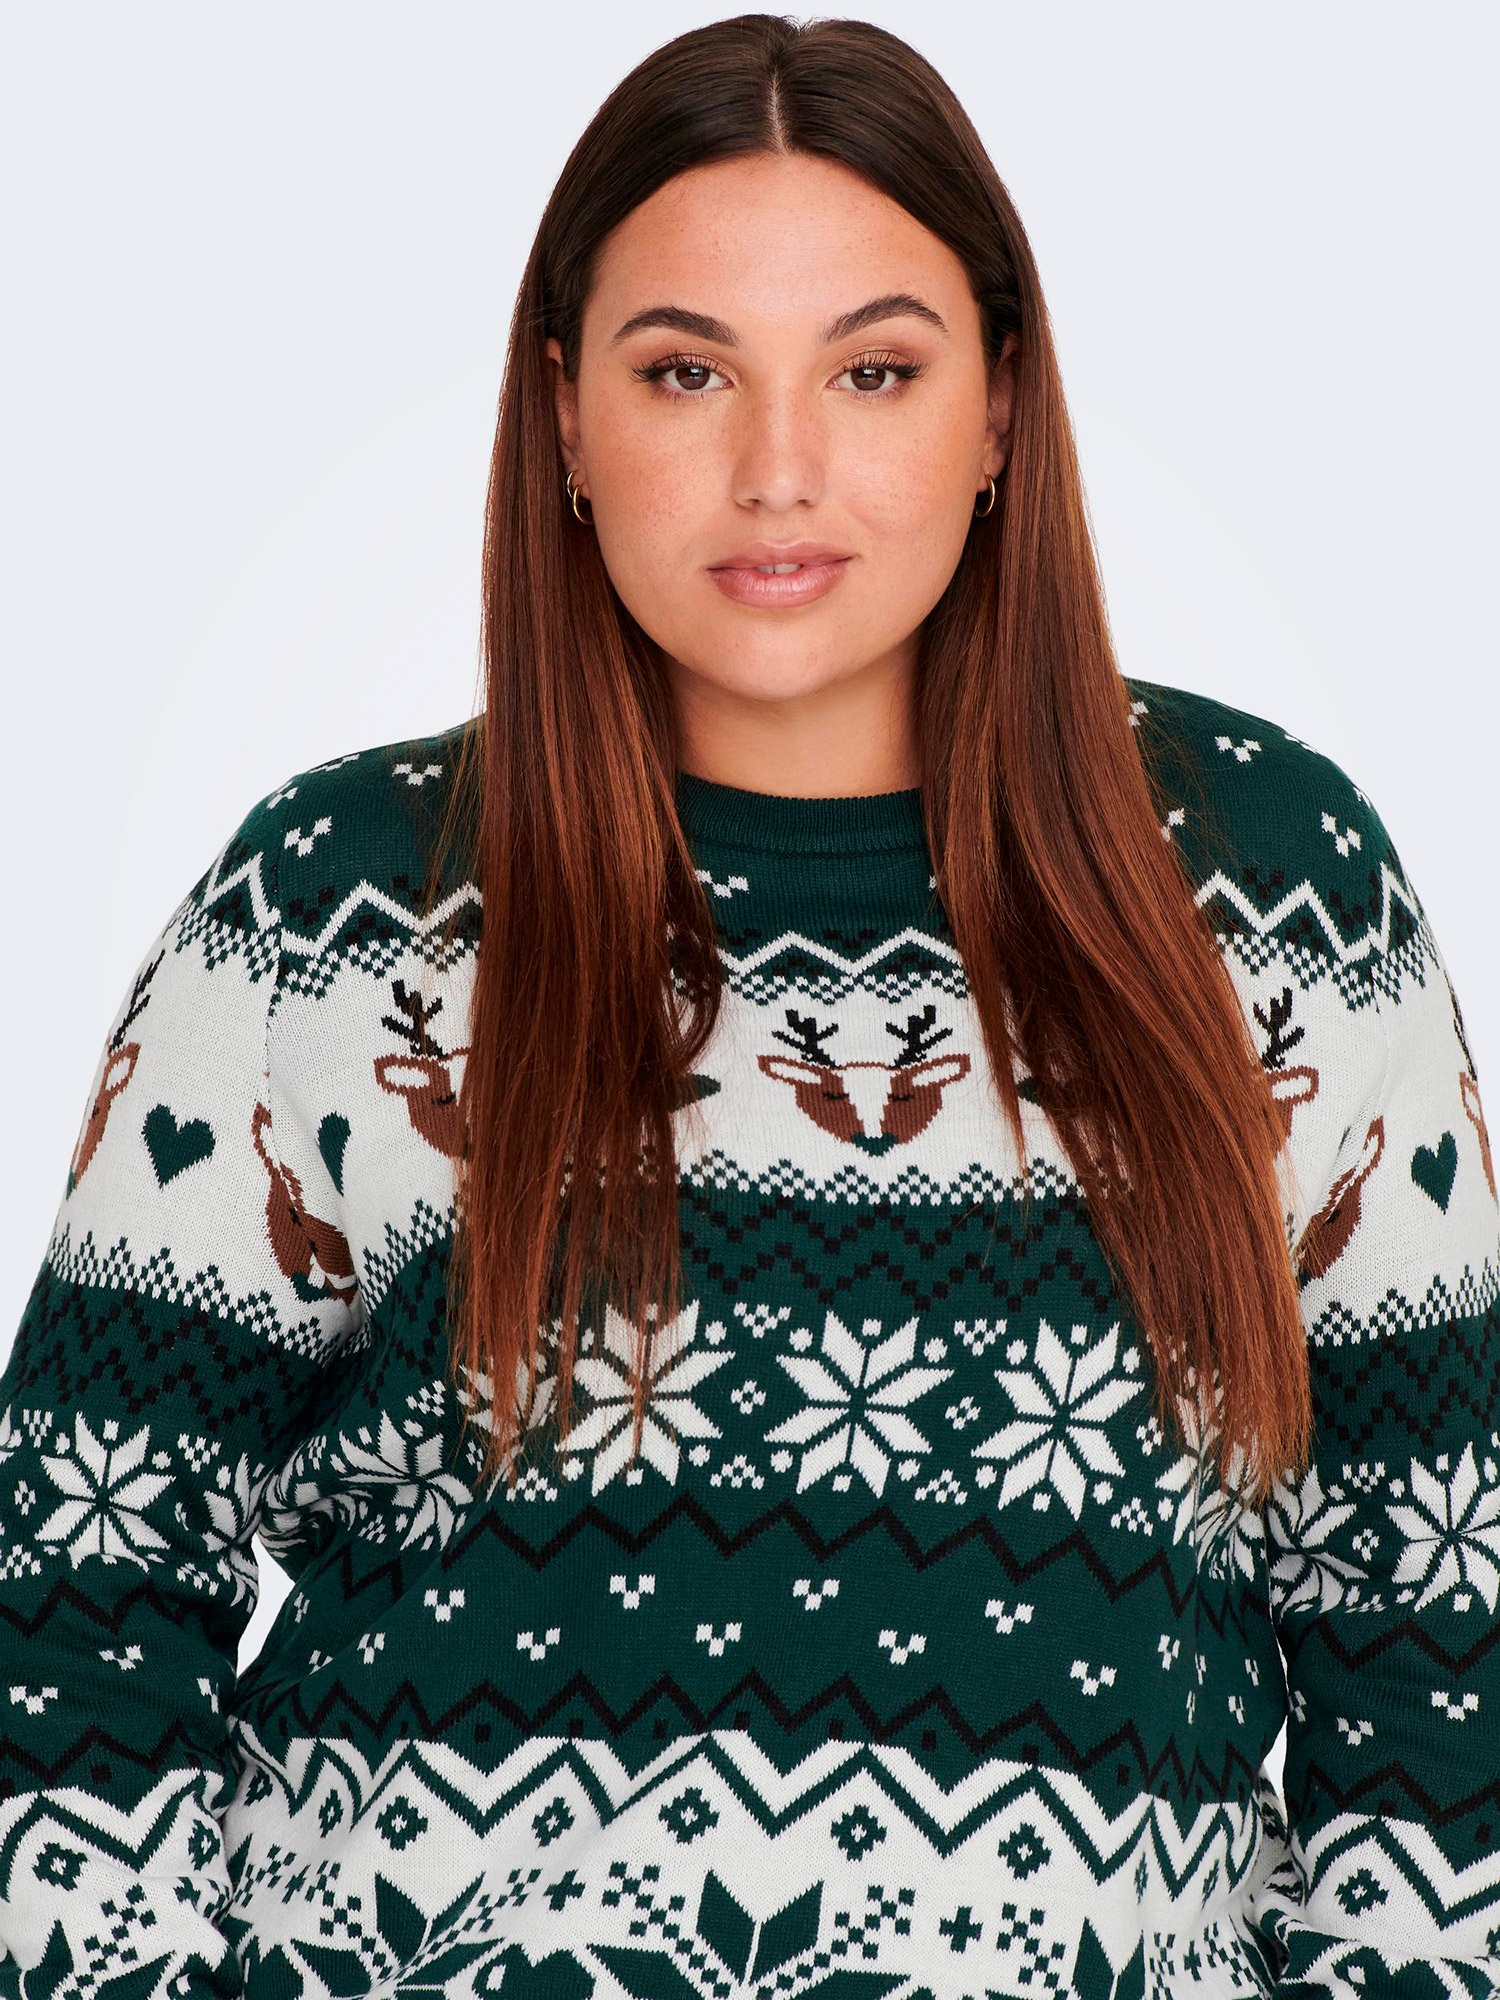 Car XMAS - Grønn strikket genser med jule motiver fra Only Carmakoma